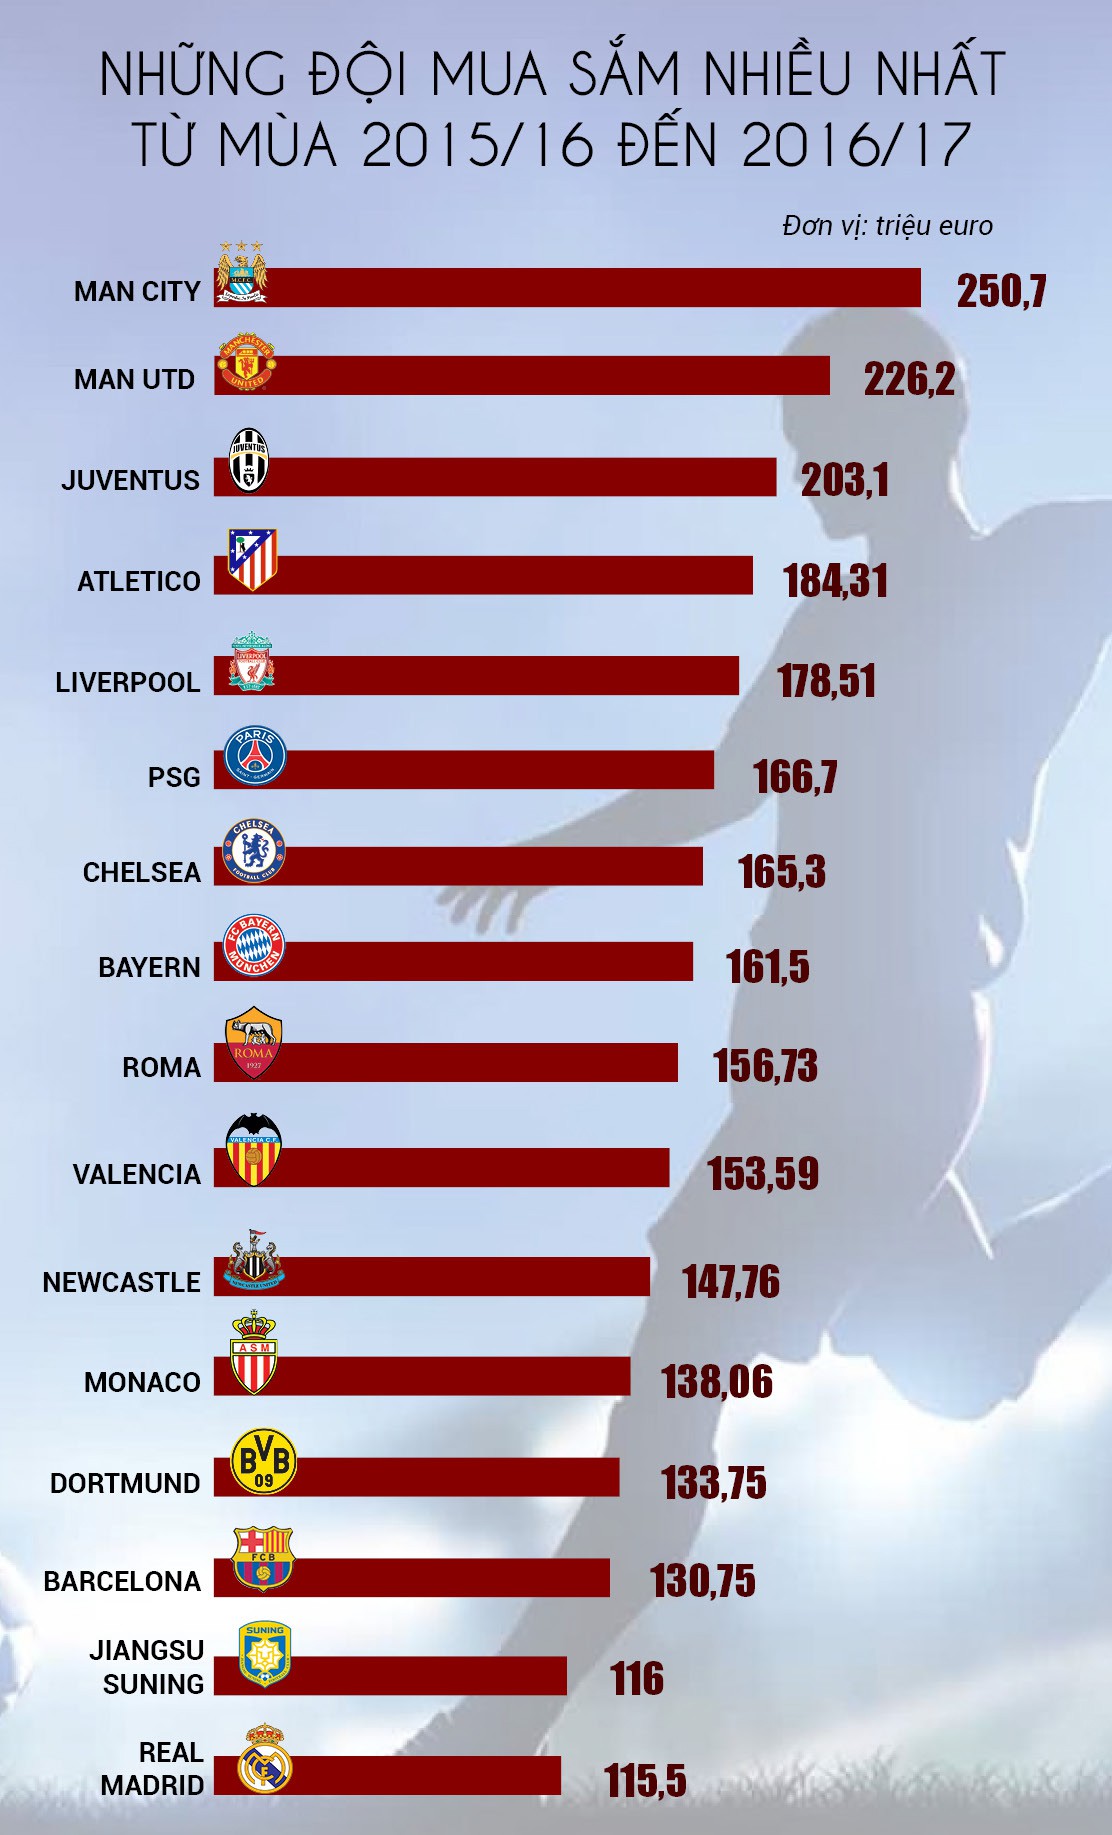 Những đội bóng mua sắm nhiêu nhất từ mùa 2015/16 đến 2016/17